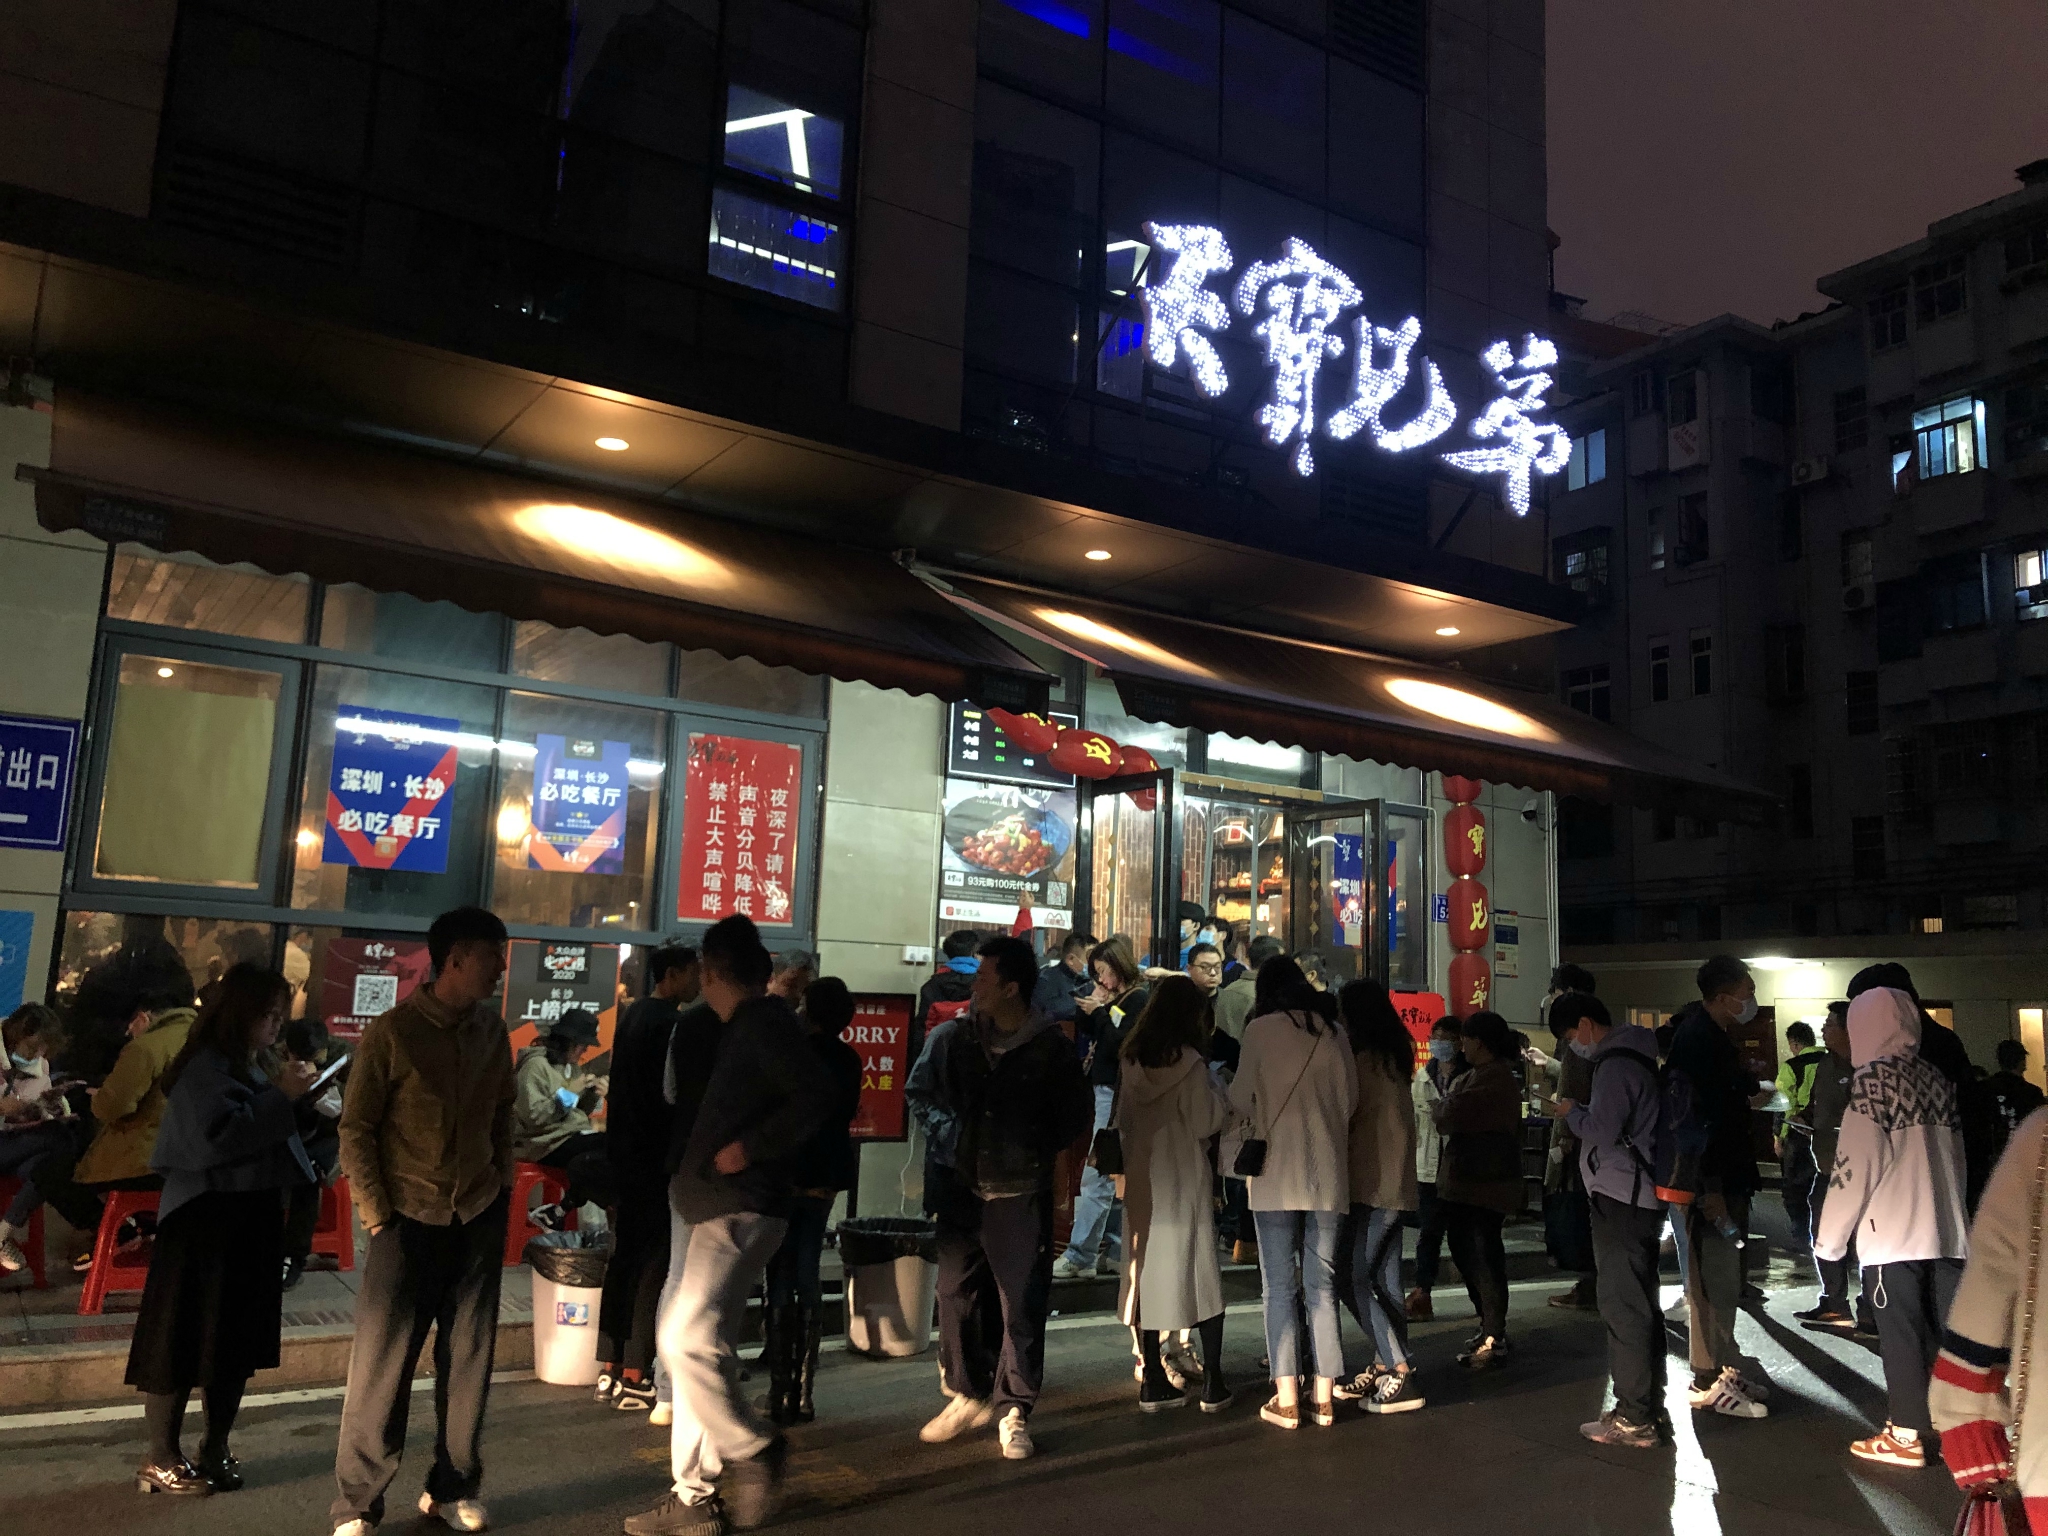 2021天宝兄弟(汇景城店)美食餐厅,紫苏桃子姜 18元 好吃 但紫苏.